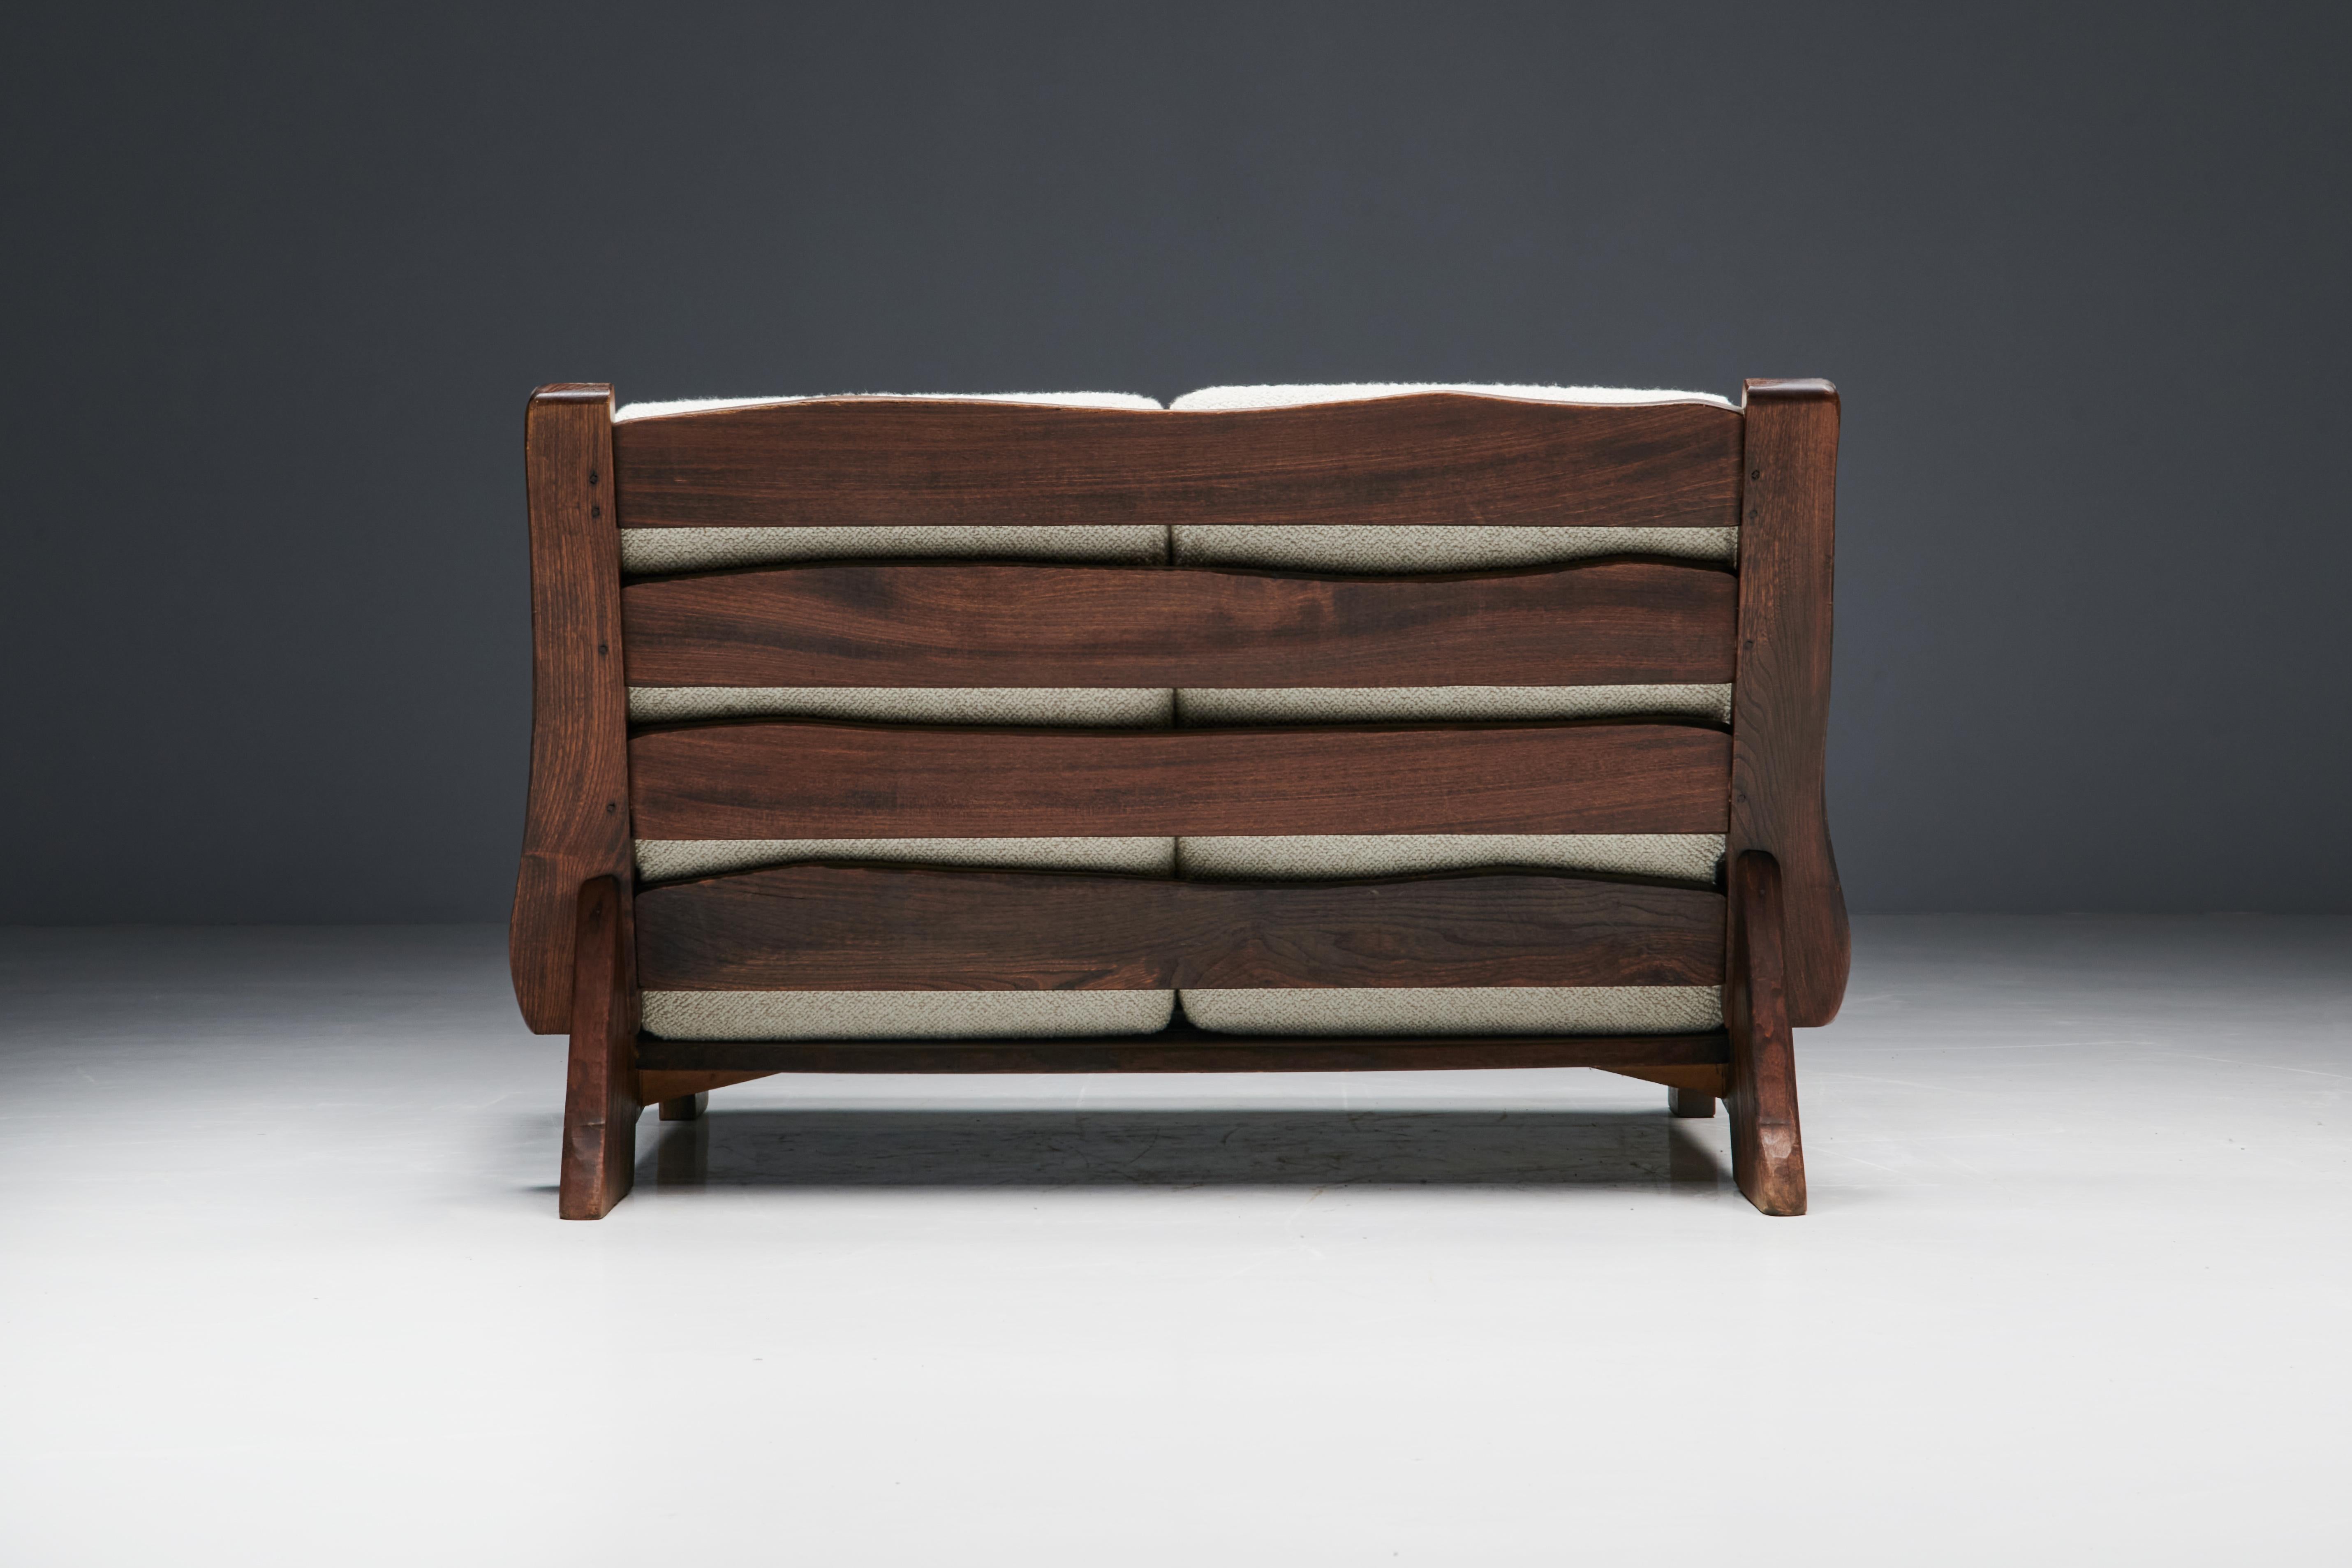 Walnut Rustic Modern Chalet Sofa in Pierre Frey Bouclé, Switzerland, 1960s For Sale 3